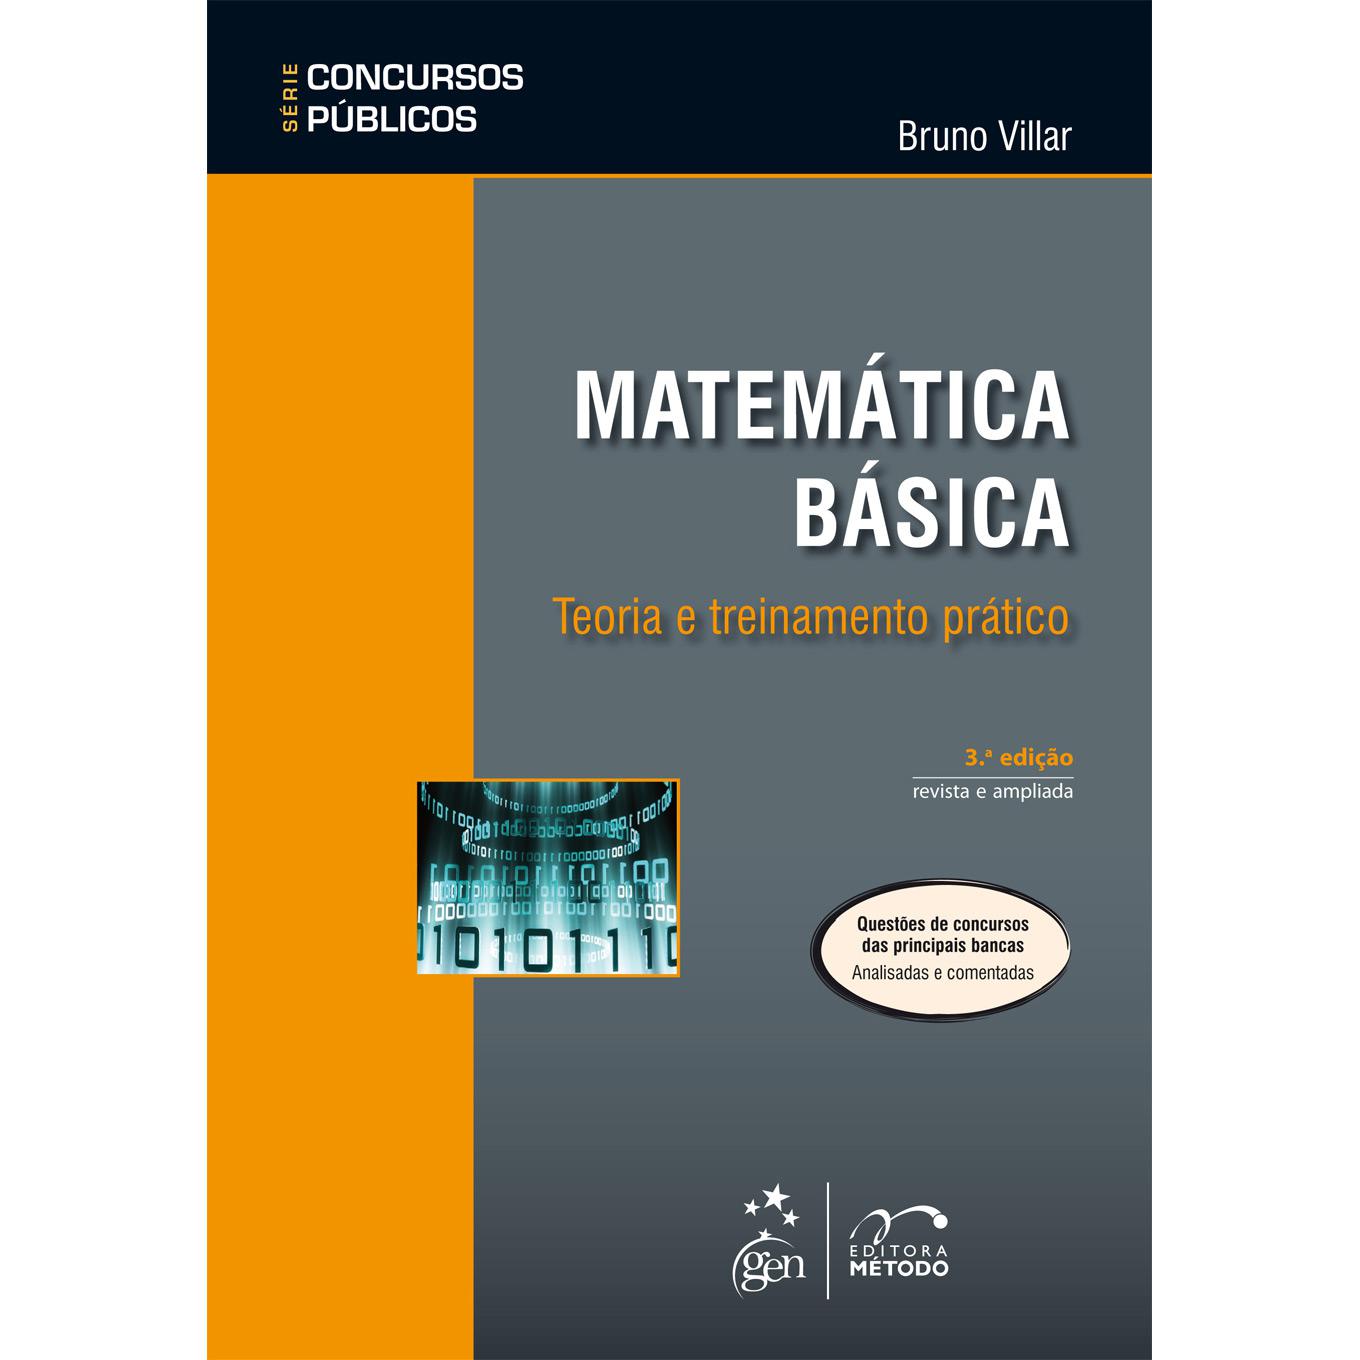 Livro - Matemática Básica: Teoria e Treinamento Prático - Série Concursos Públicos é bom? Vale a pena?